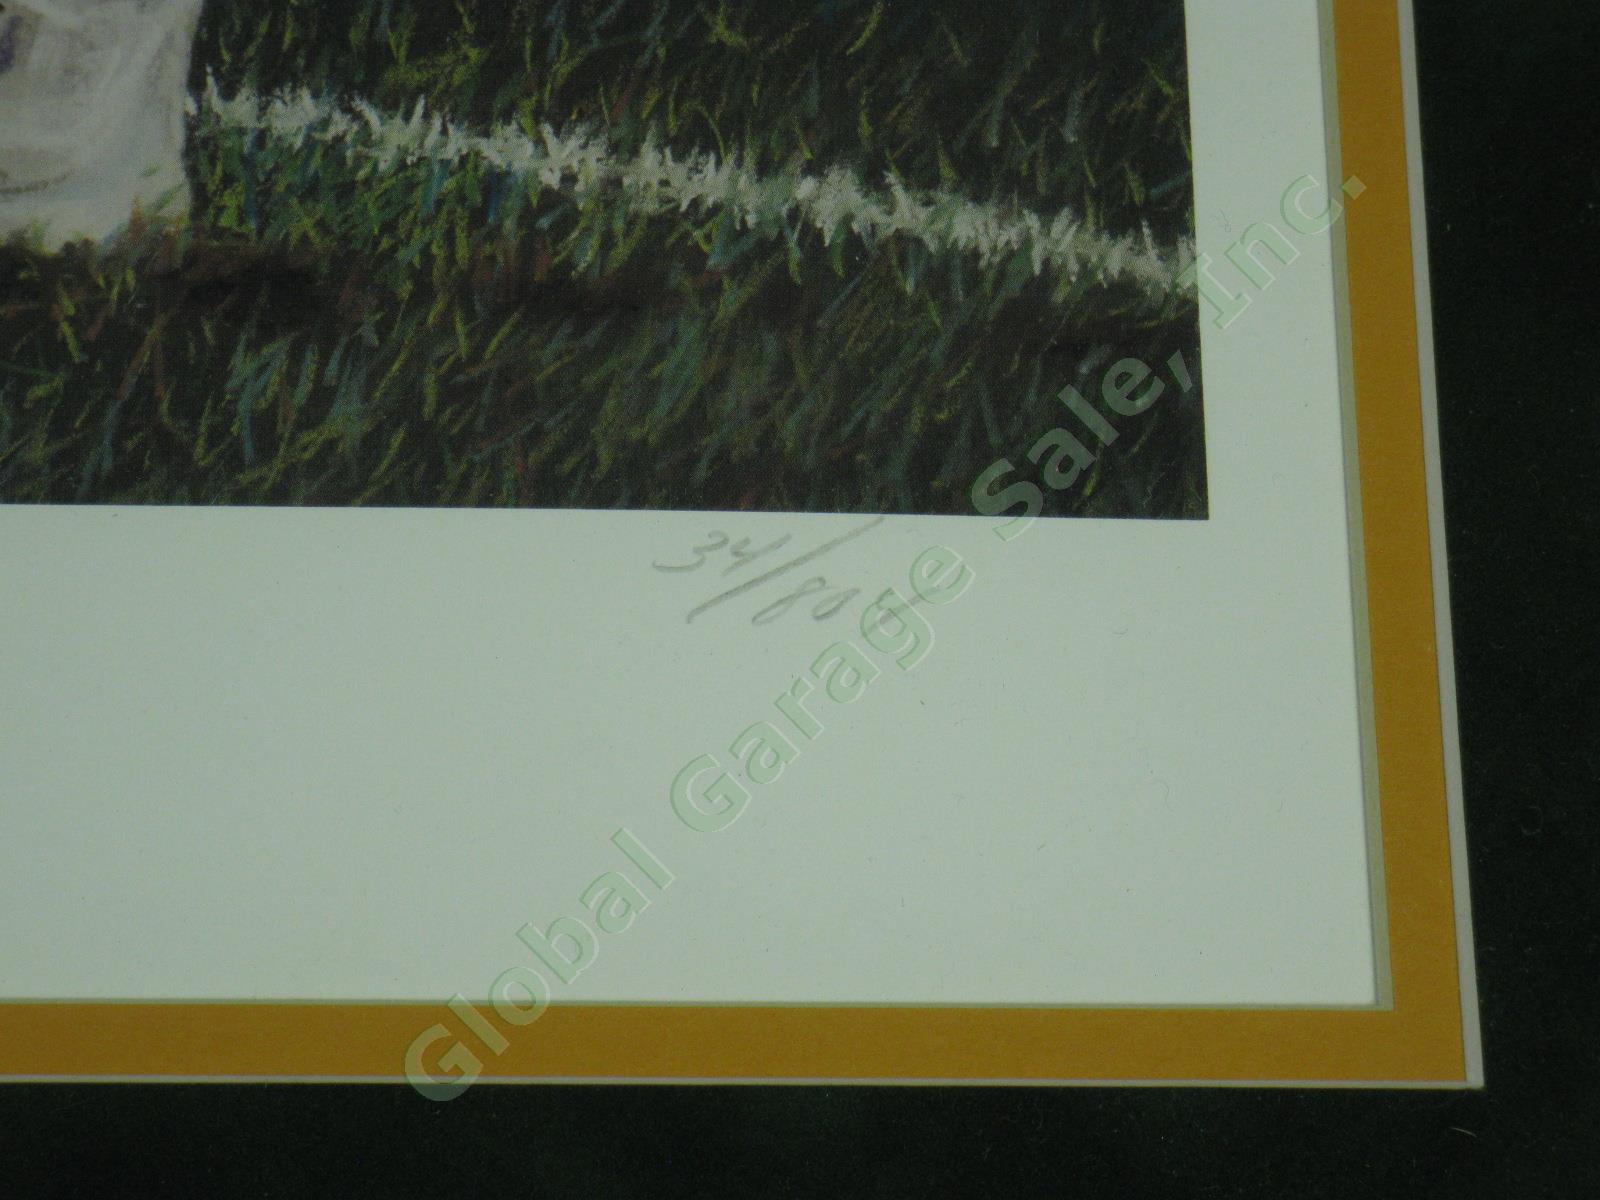 Brett Favre Signed Green Bay Packers Art Print Andrew Goralski Heart of Gold NR! 6